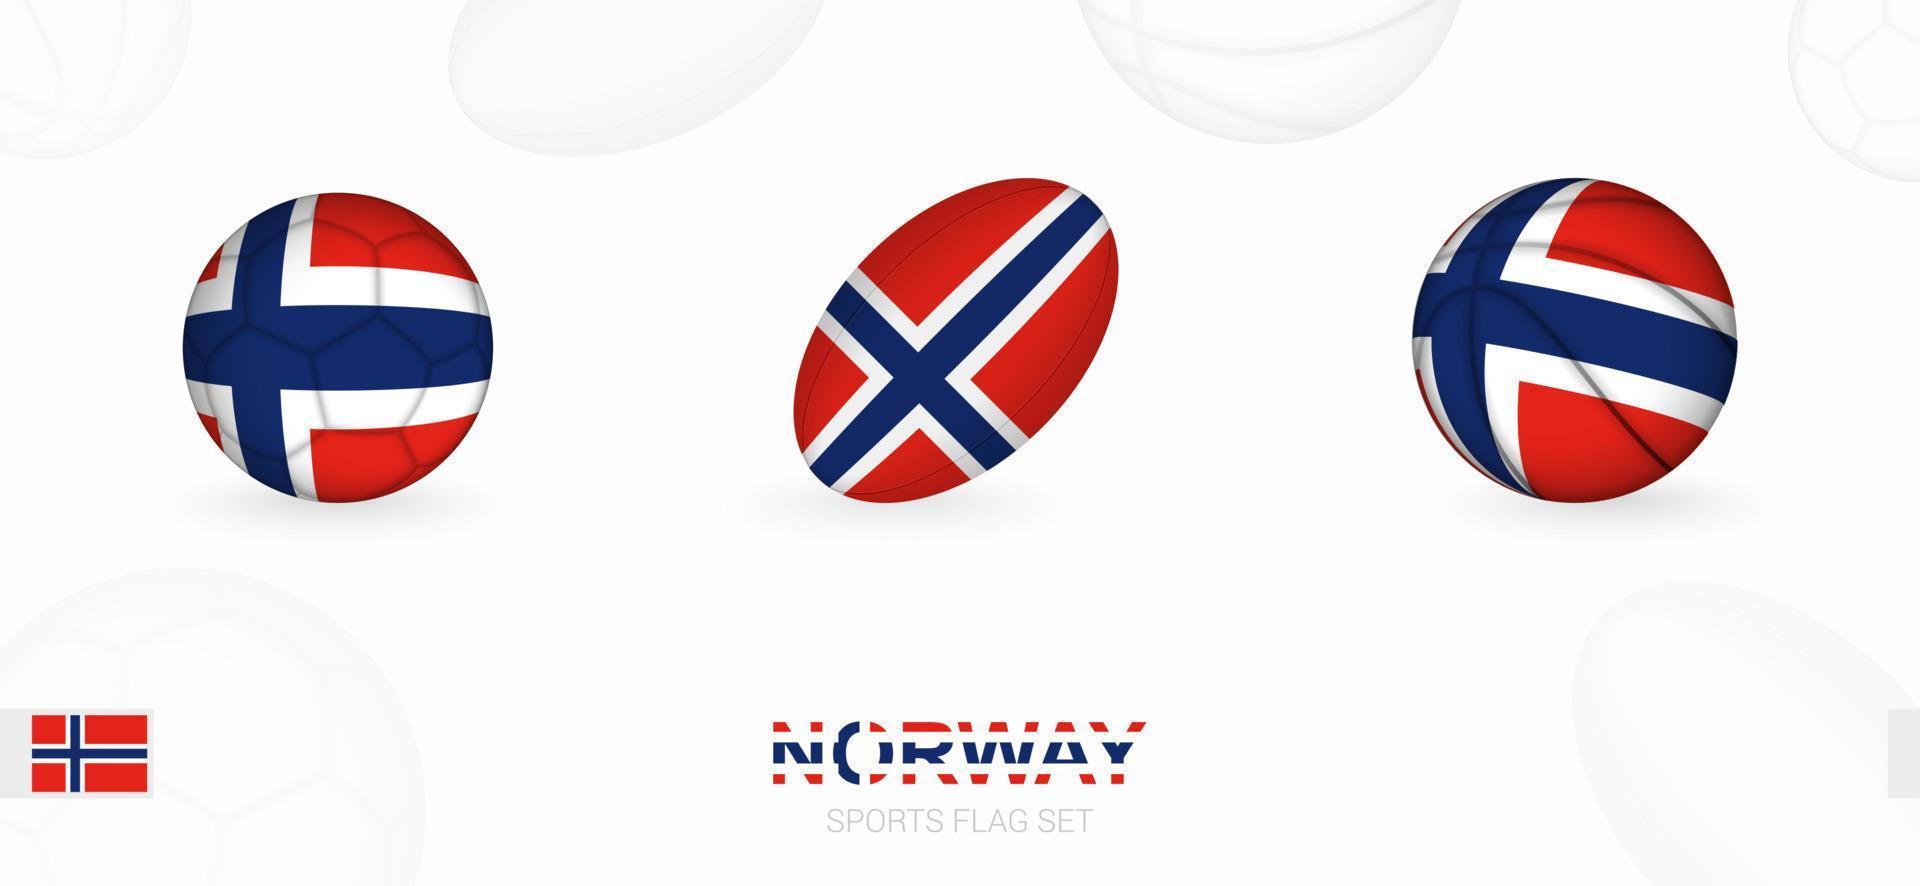 sporter ikoner för fotboll, rugby och basketboll med de flagga av Norge. vektor